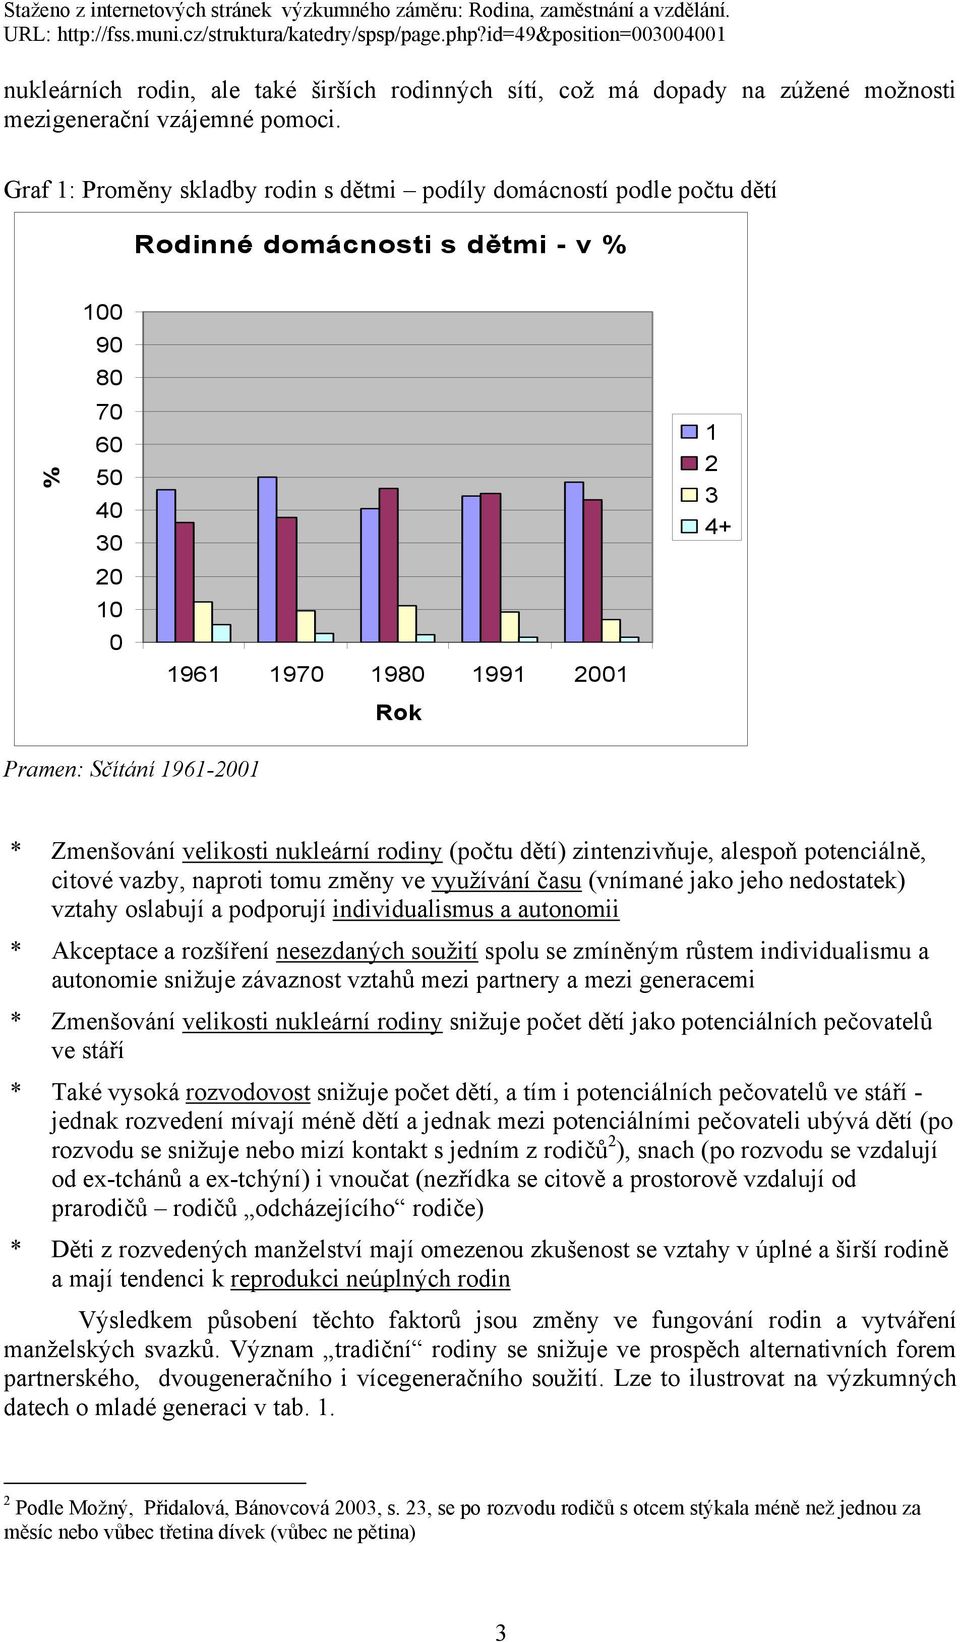 1961-2001 * Zmenšování velikosti nukleární rodiny (počtu dětí) zintenzivňuje, alespoň potenciálně, citové vazby, naproti tomu změny ve využívání času (vnímané jako jeho nedostatek) vztahy oslabují a